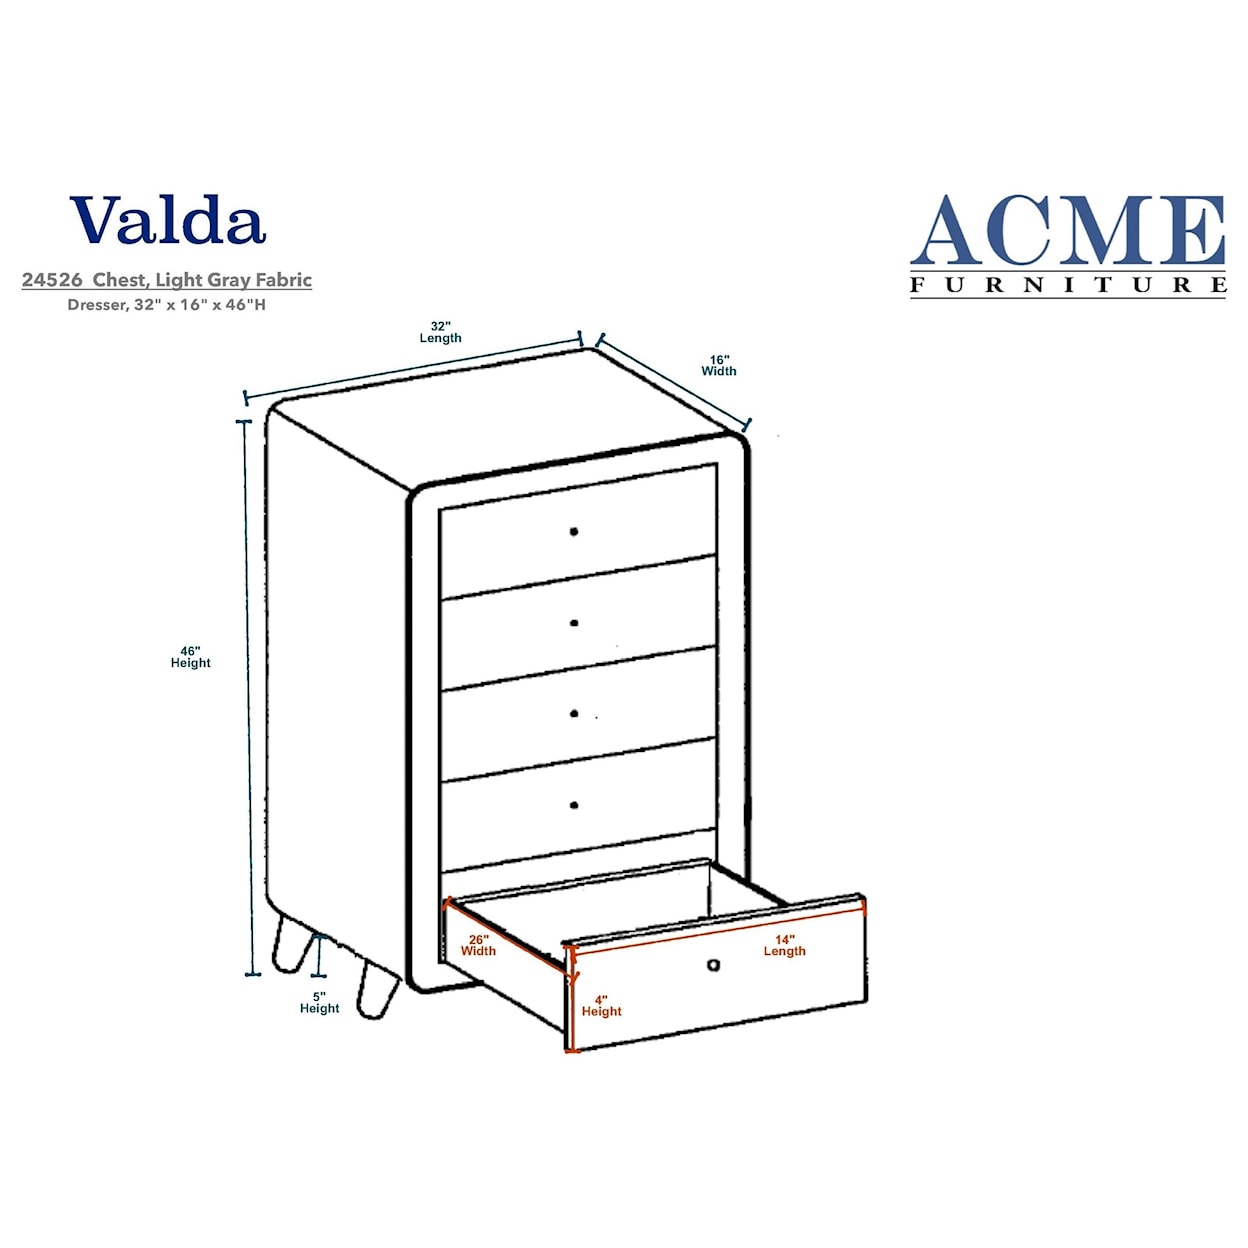 Acme Furniture Valda Chest